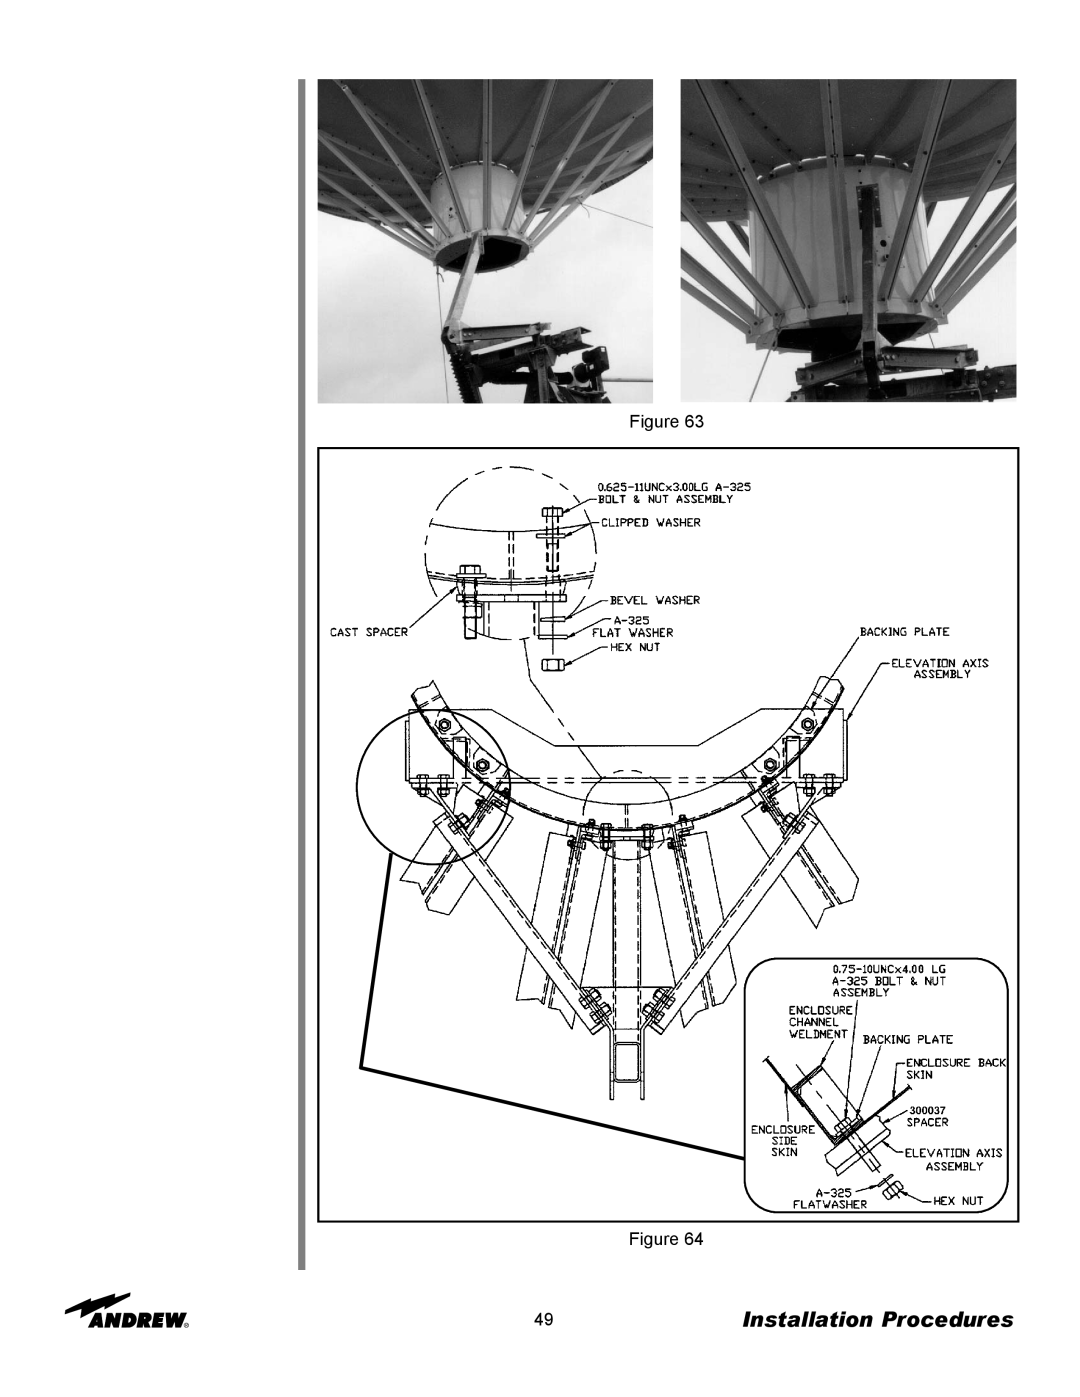 Andrew ES73 manual Installation Procedures, Figure Figure 